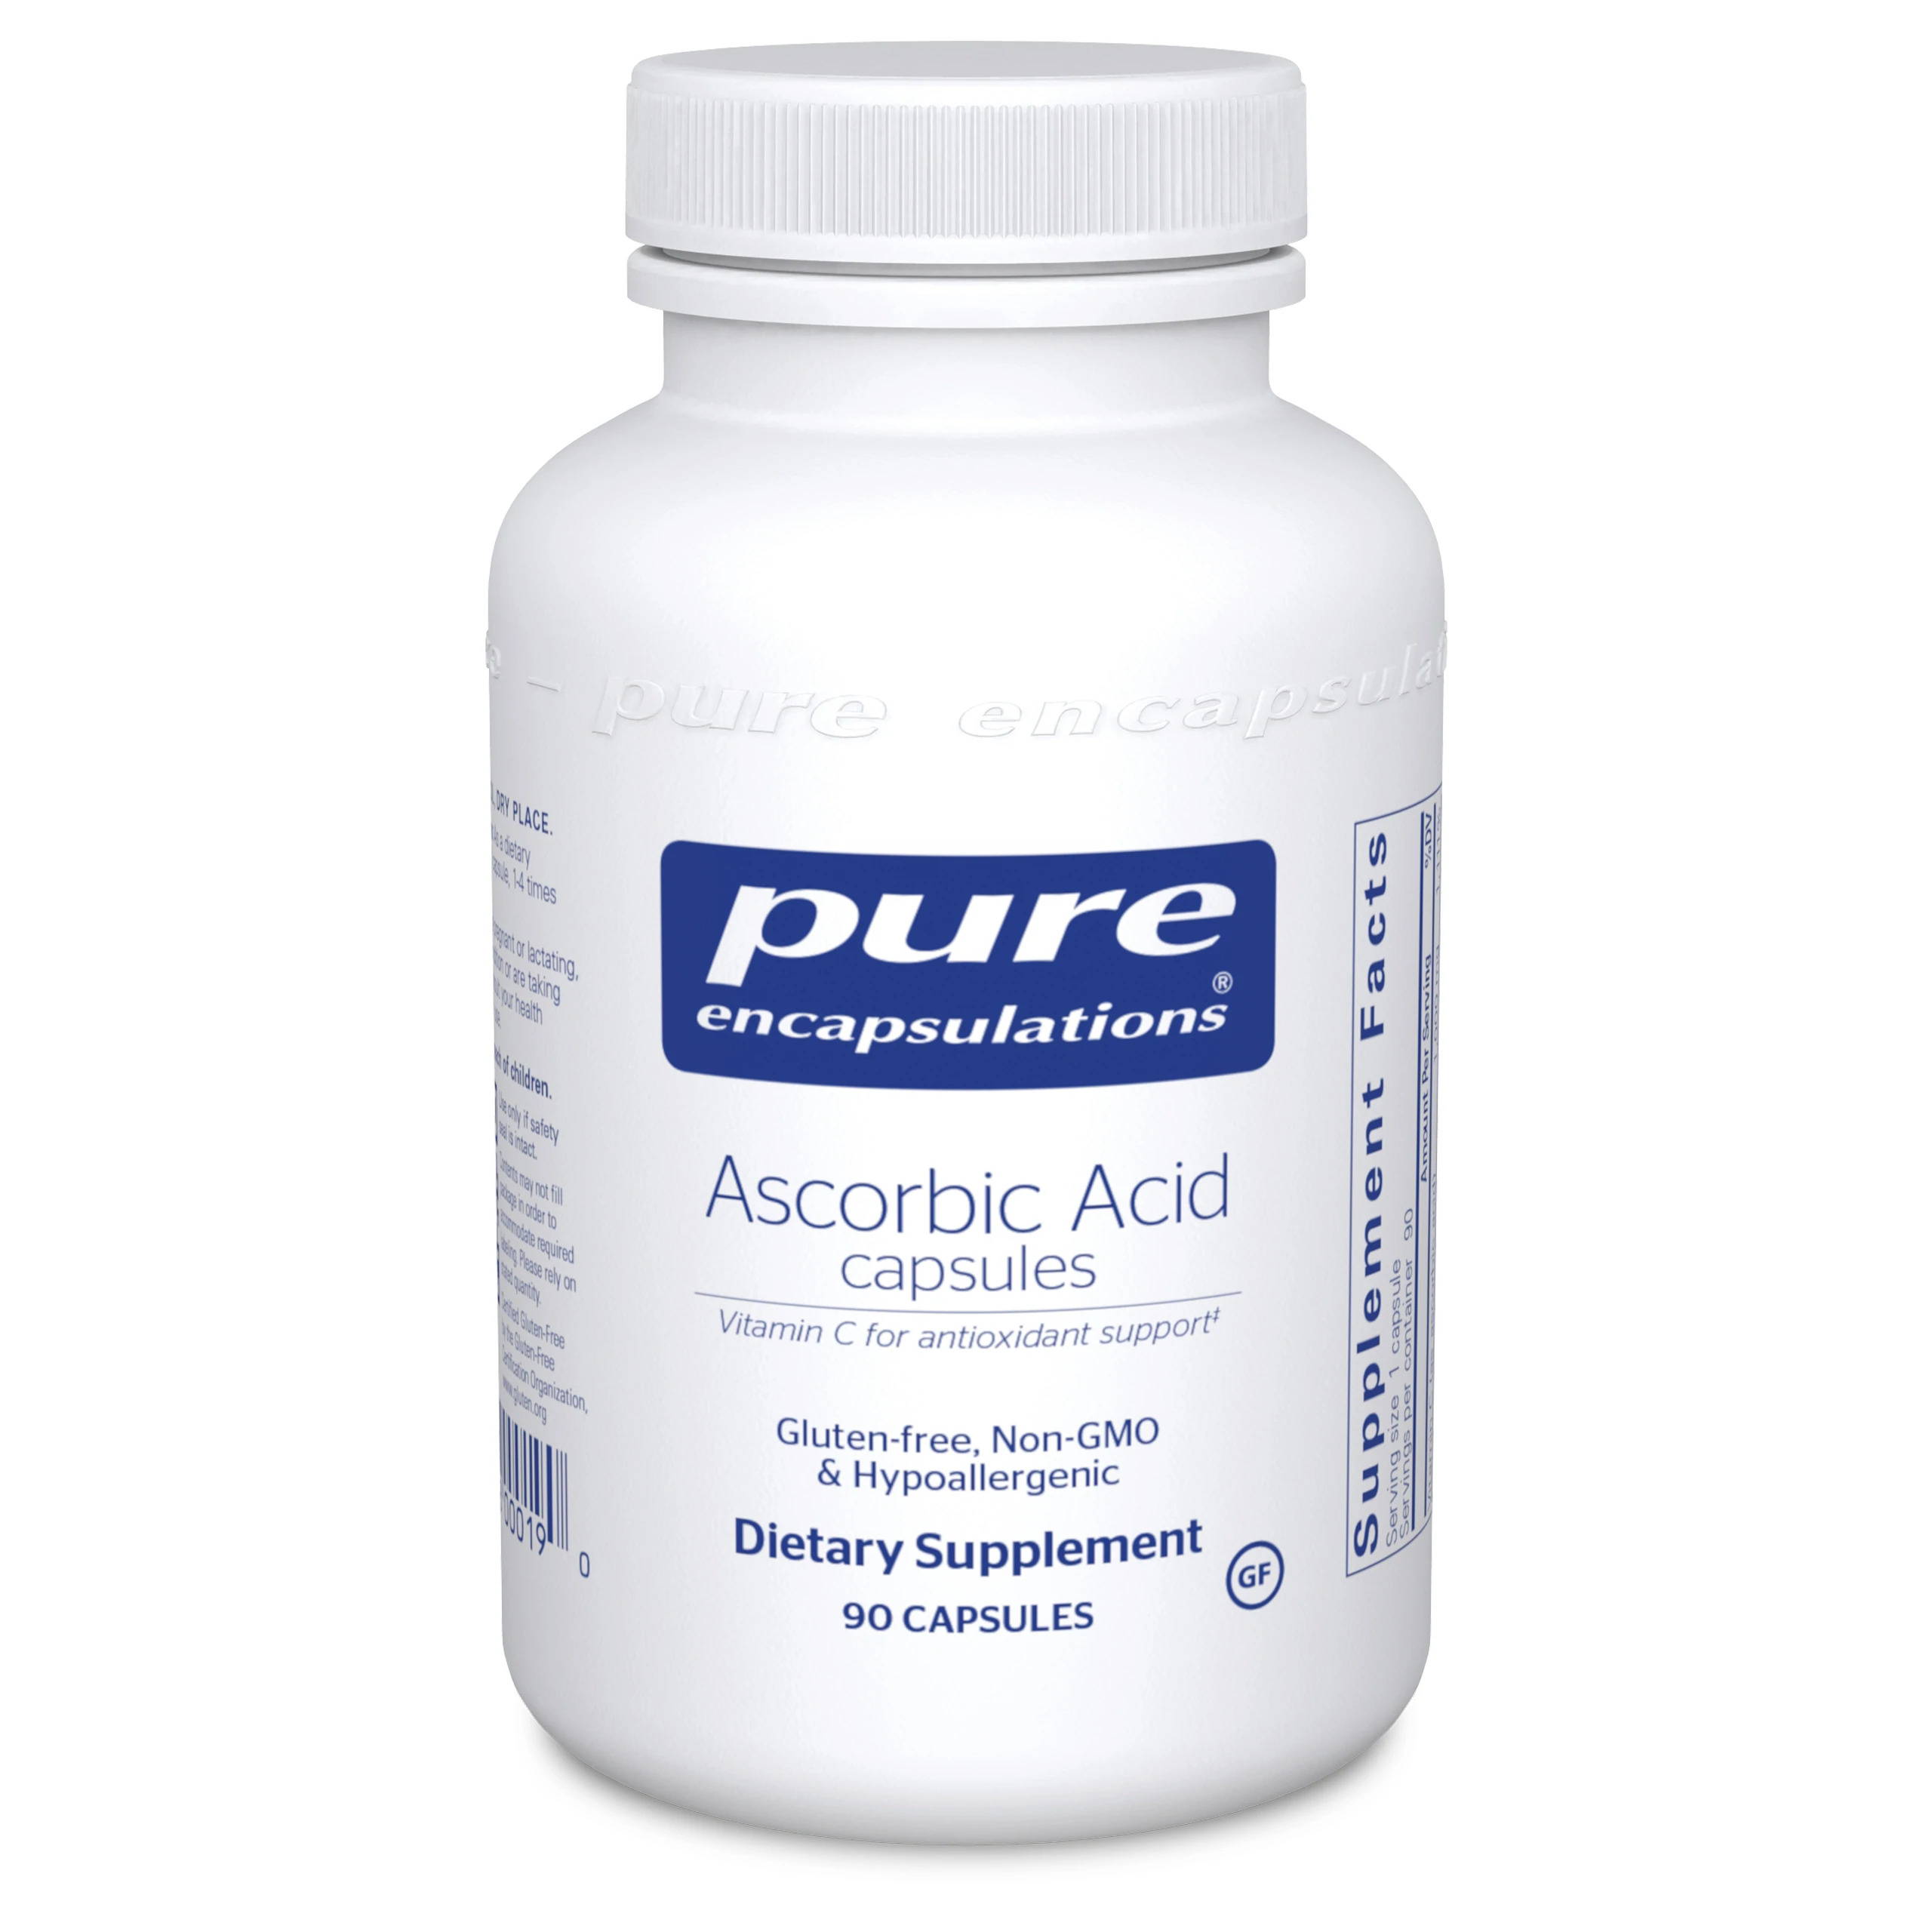 Ascorbic Acid Capsules by Pure Encapsulations